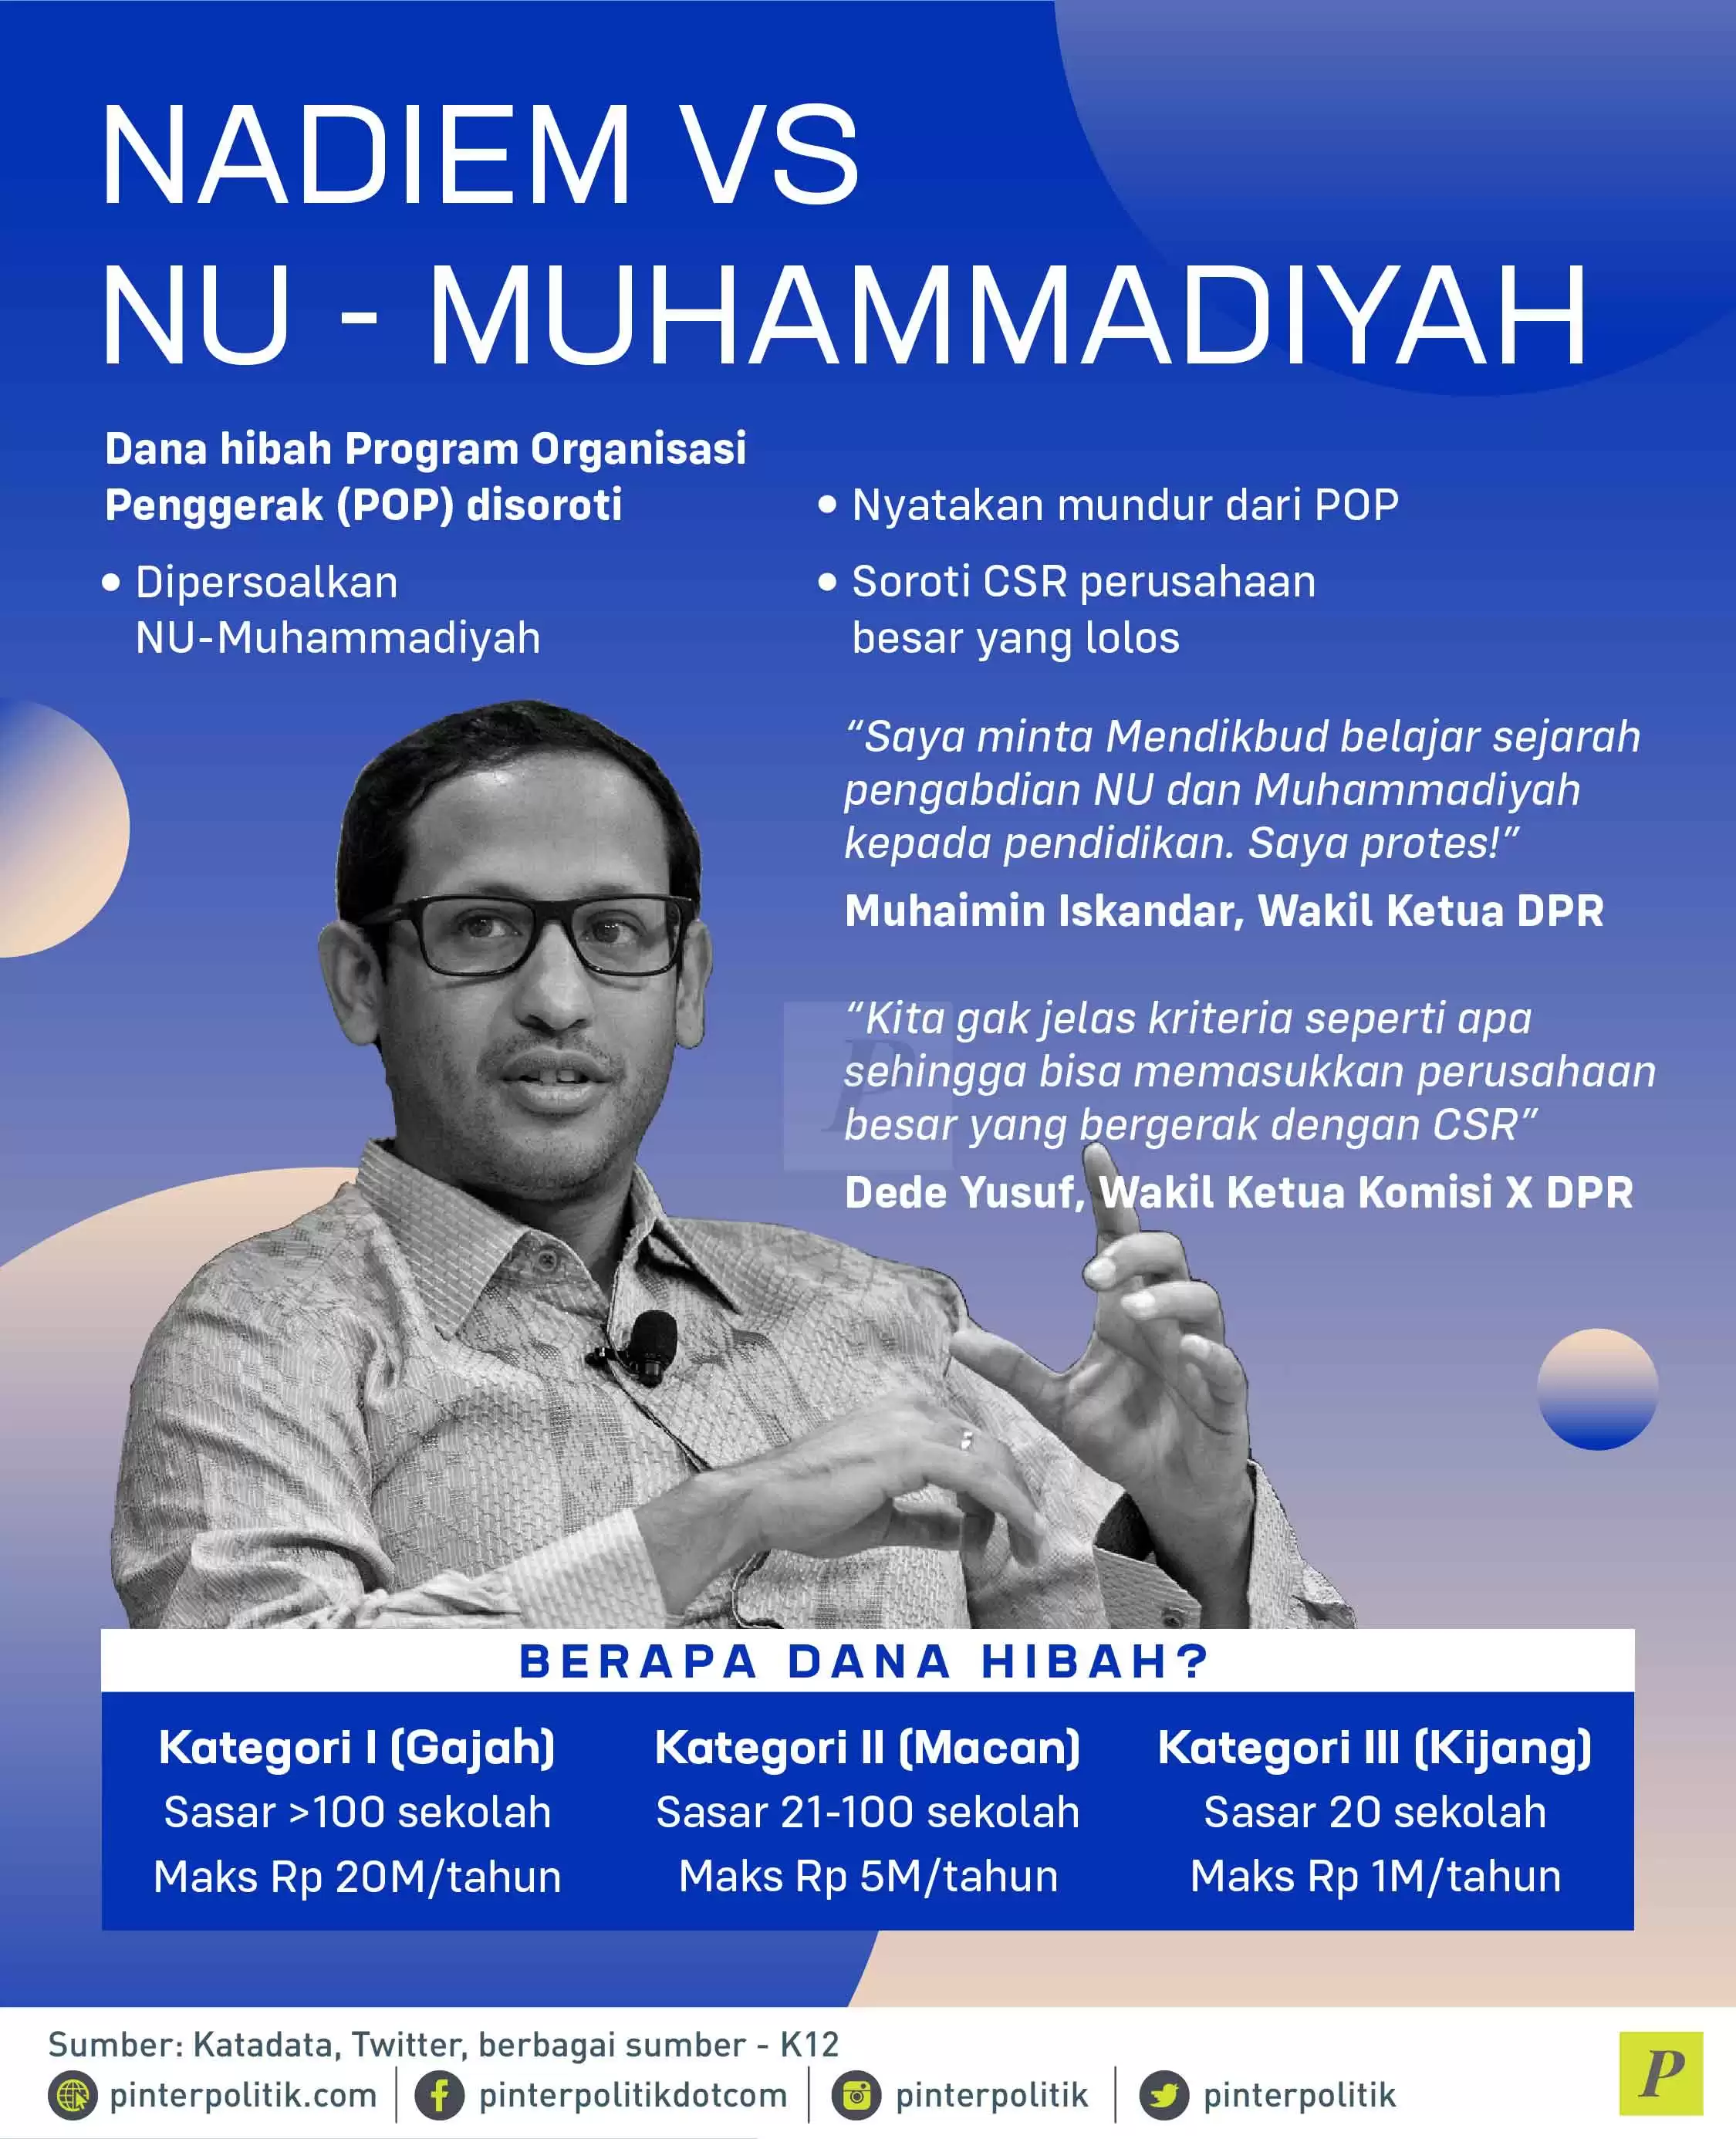 Nadiem vs NU-Muhammadiyah